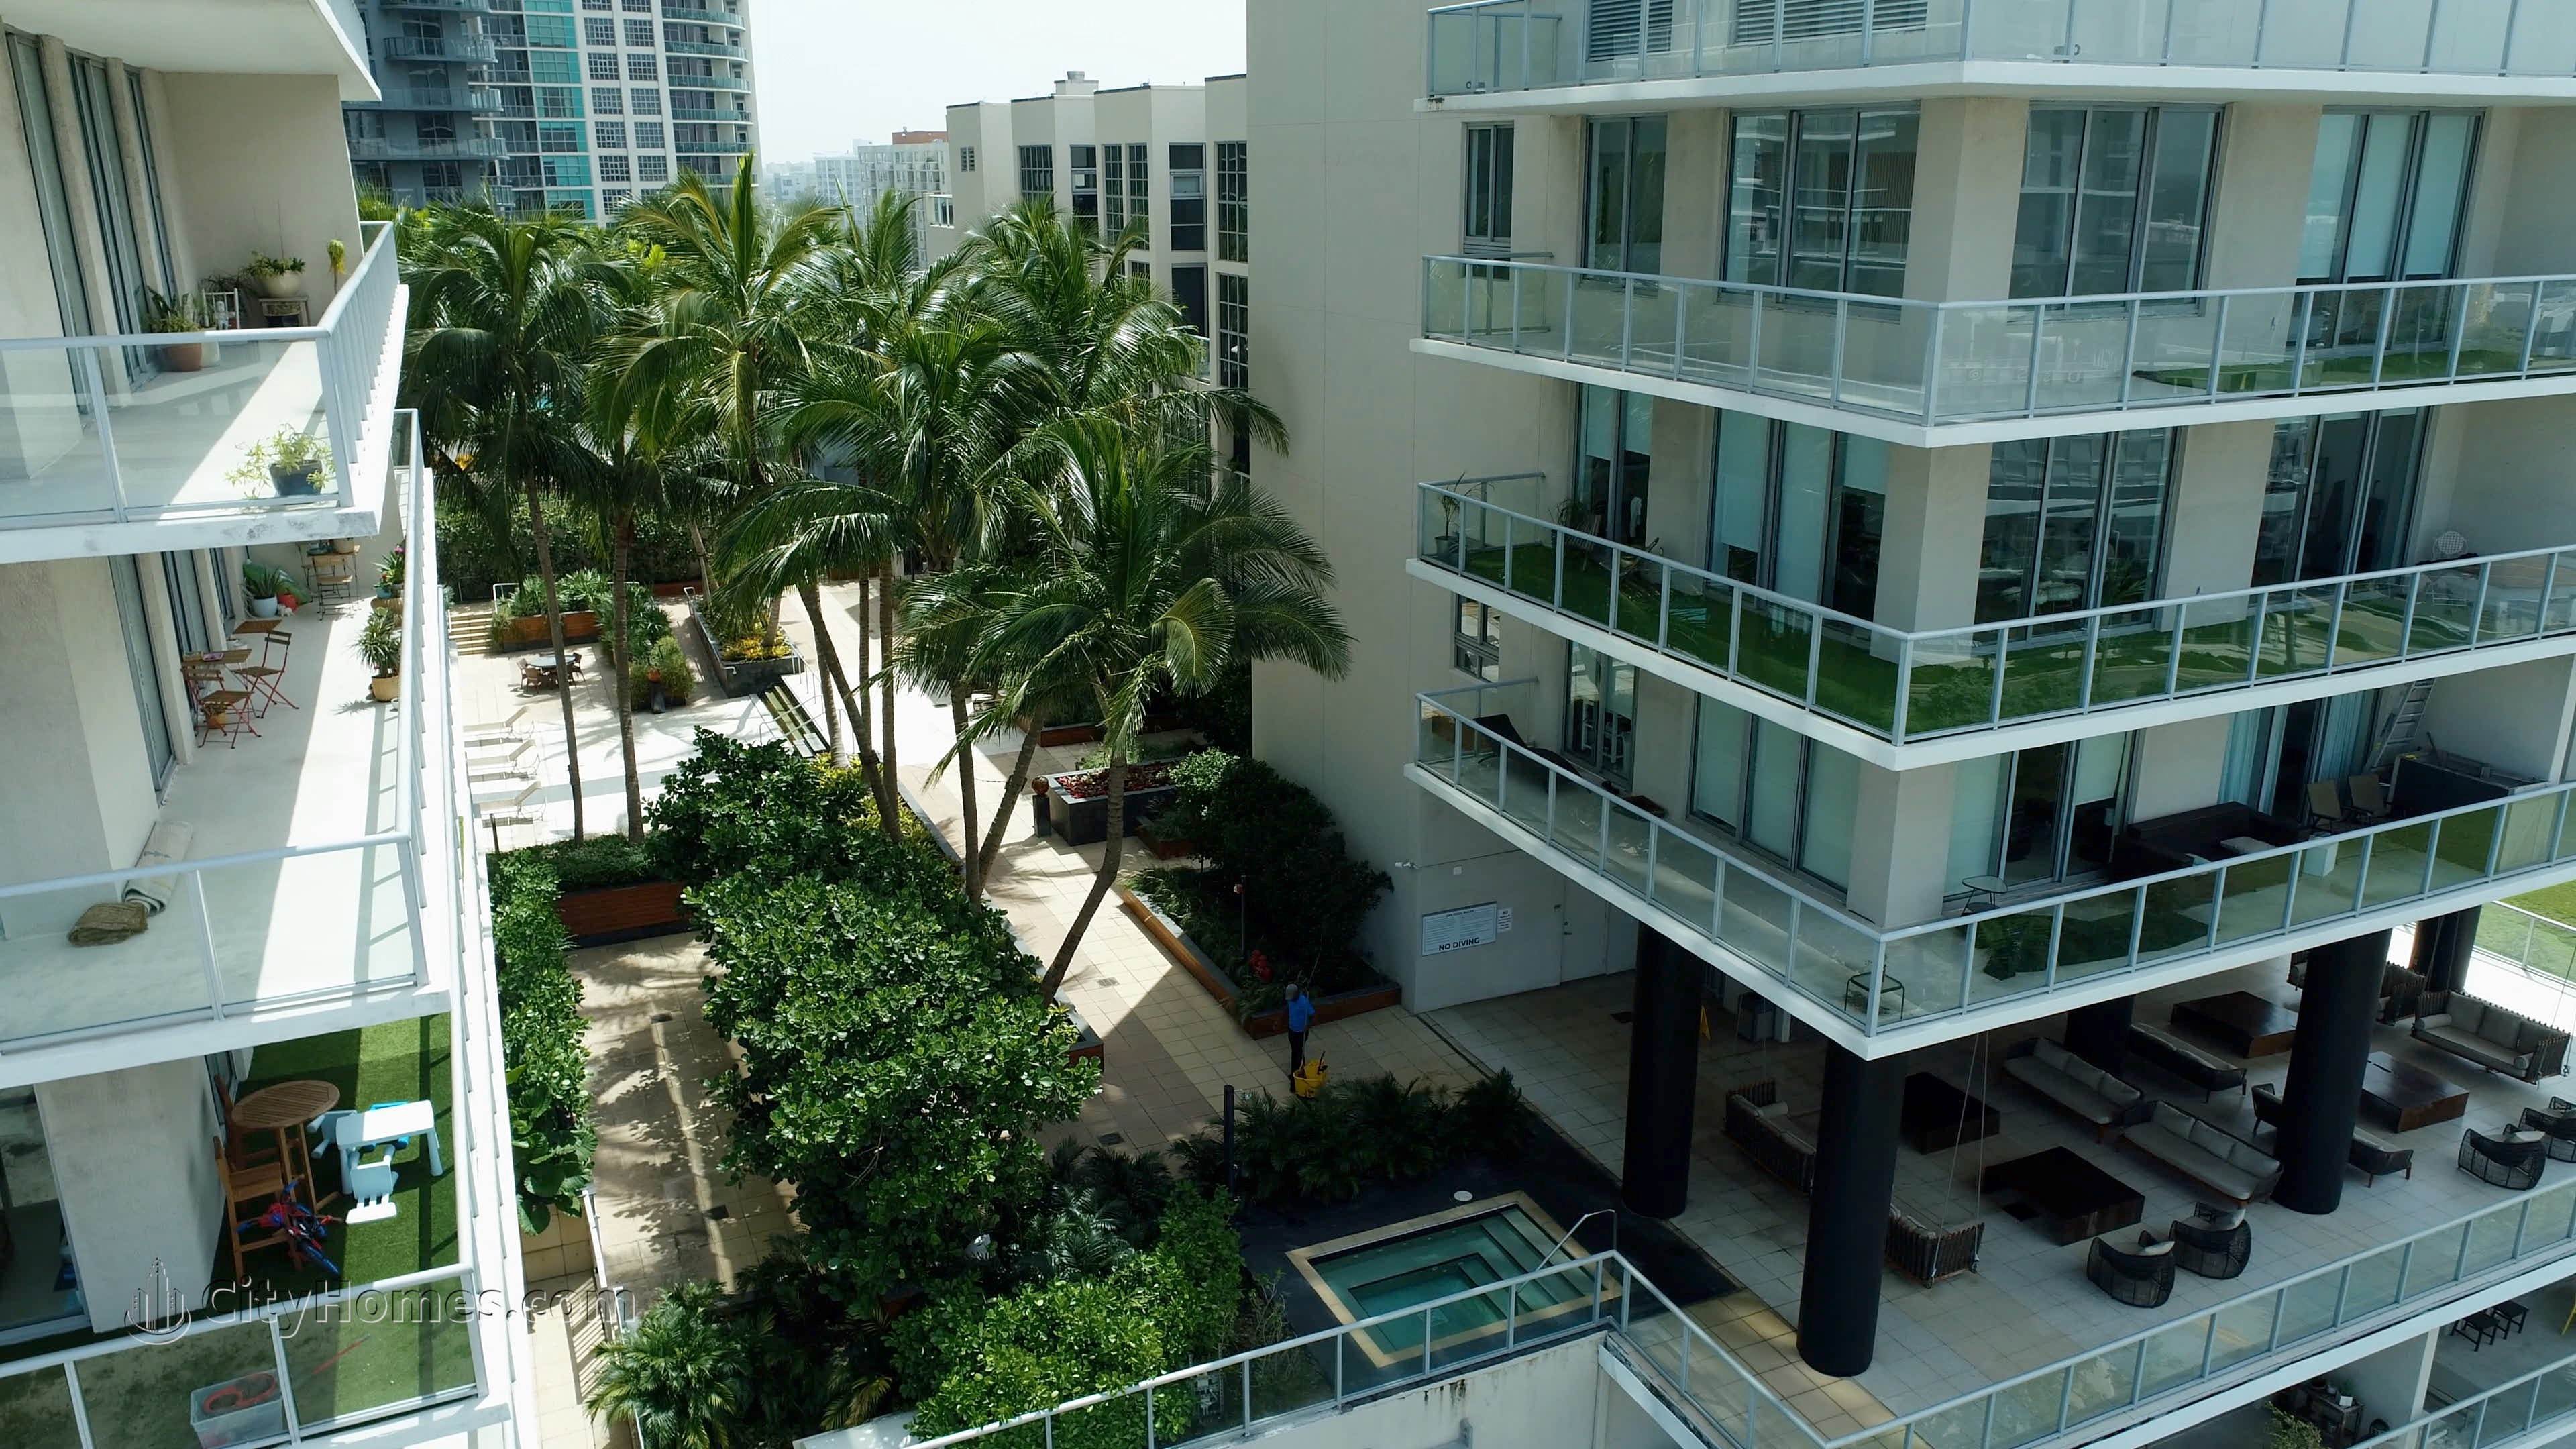 4. Two Midtown Midrise xây dựng tại 3451 NE 1st Avenue, Midtown Miami, Miami, FL 33137